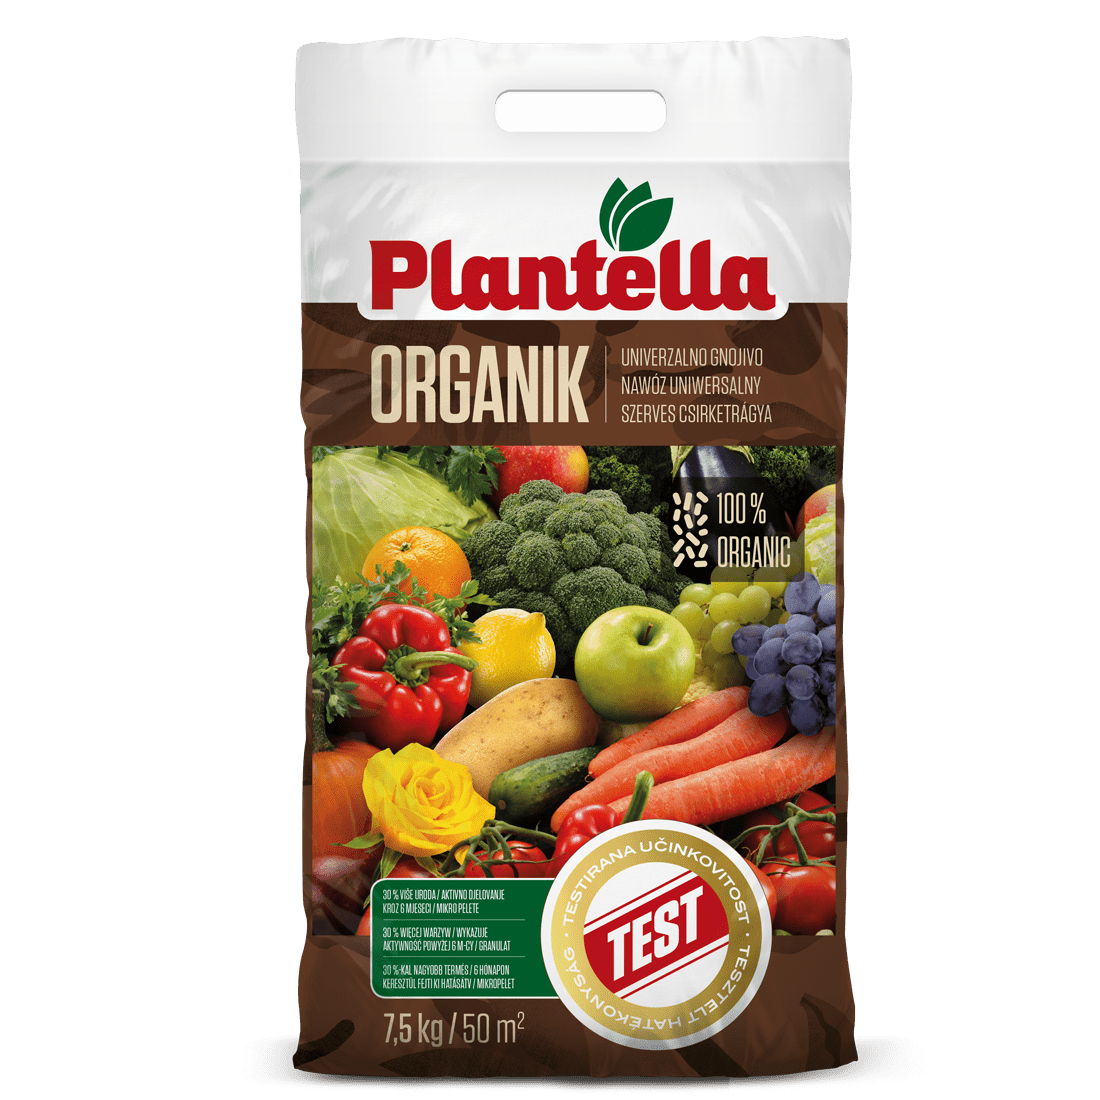 Plantella organik